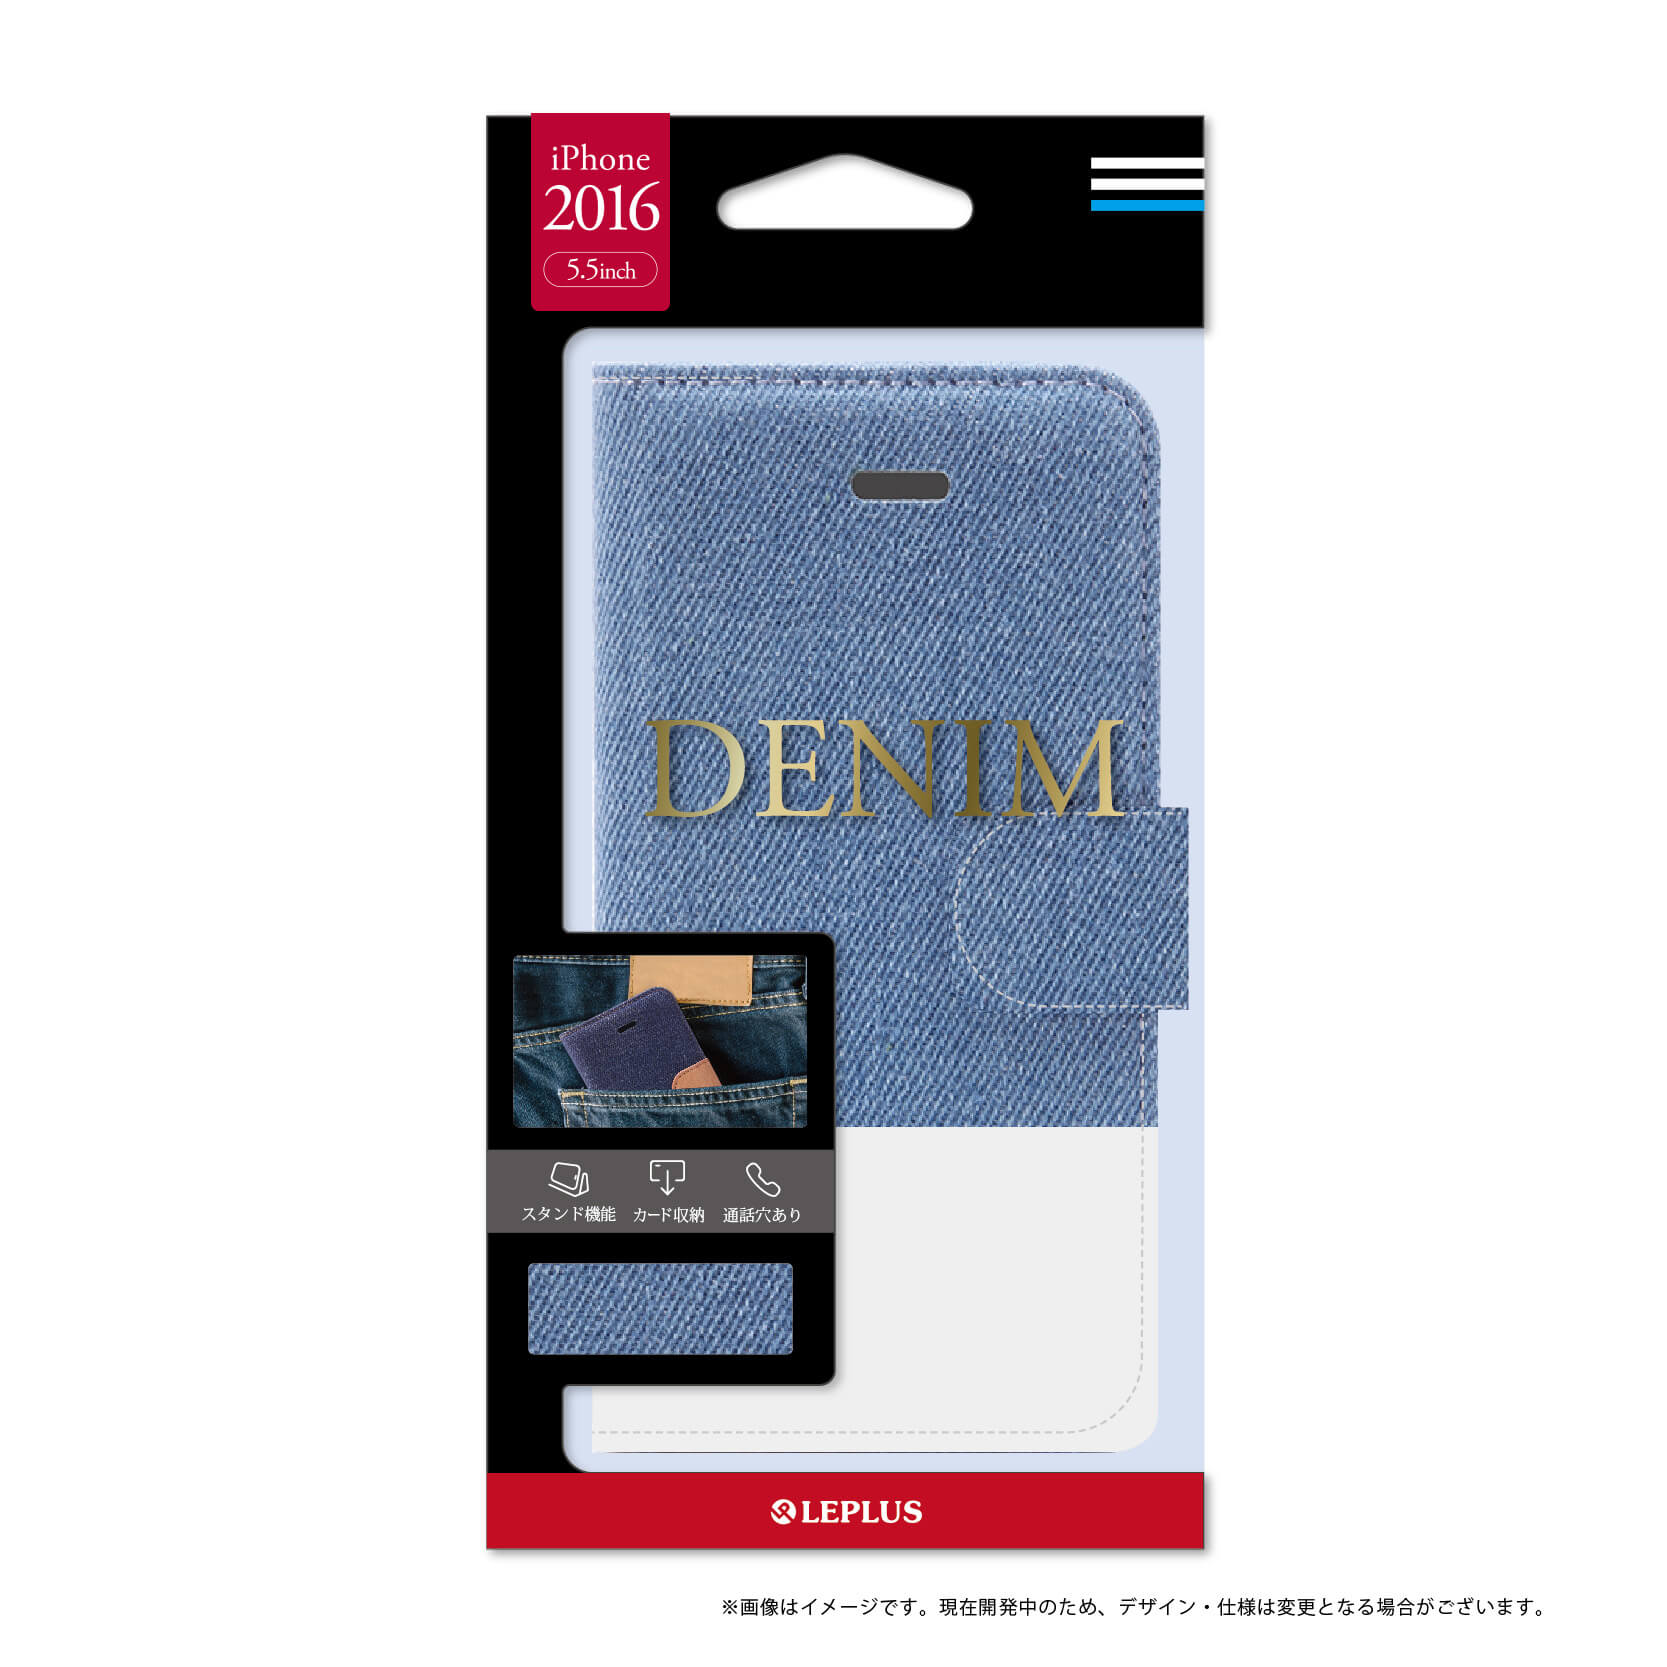 iPhone7 Plus ブックタイプファブリックデザインケース「DENIM」 ライトブルー/ホワイト